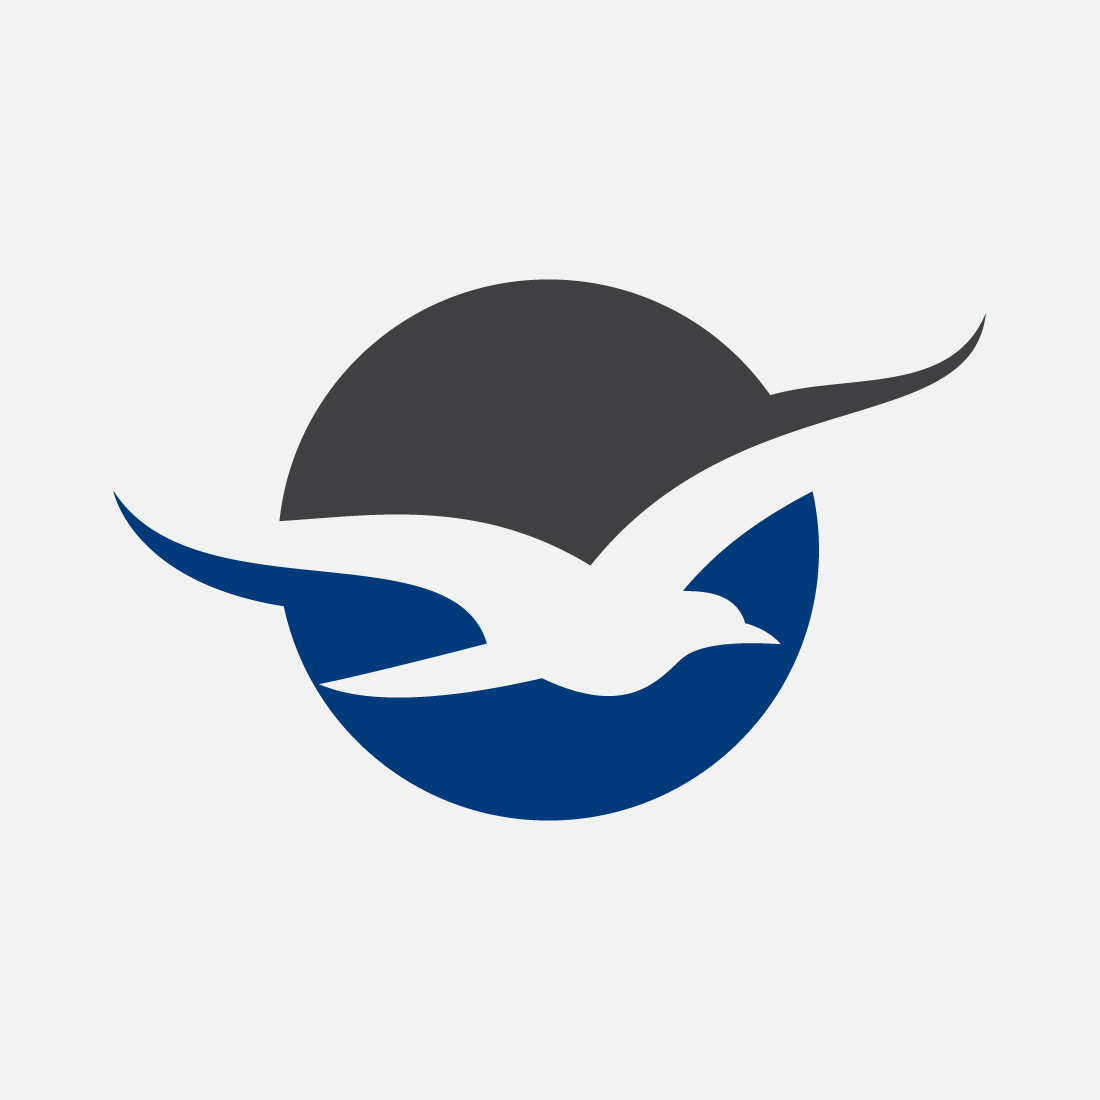 Flying bird into a circle logo, Bird logo design vector illustration preview image.